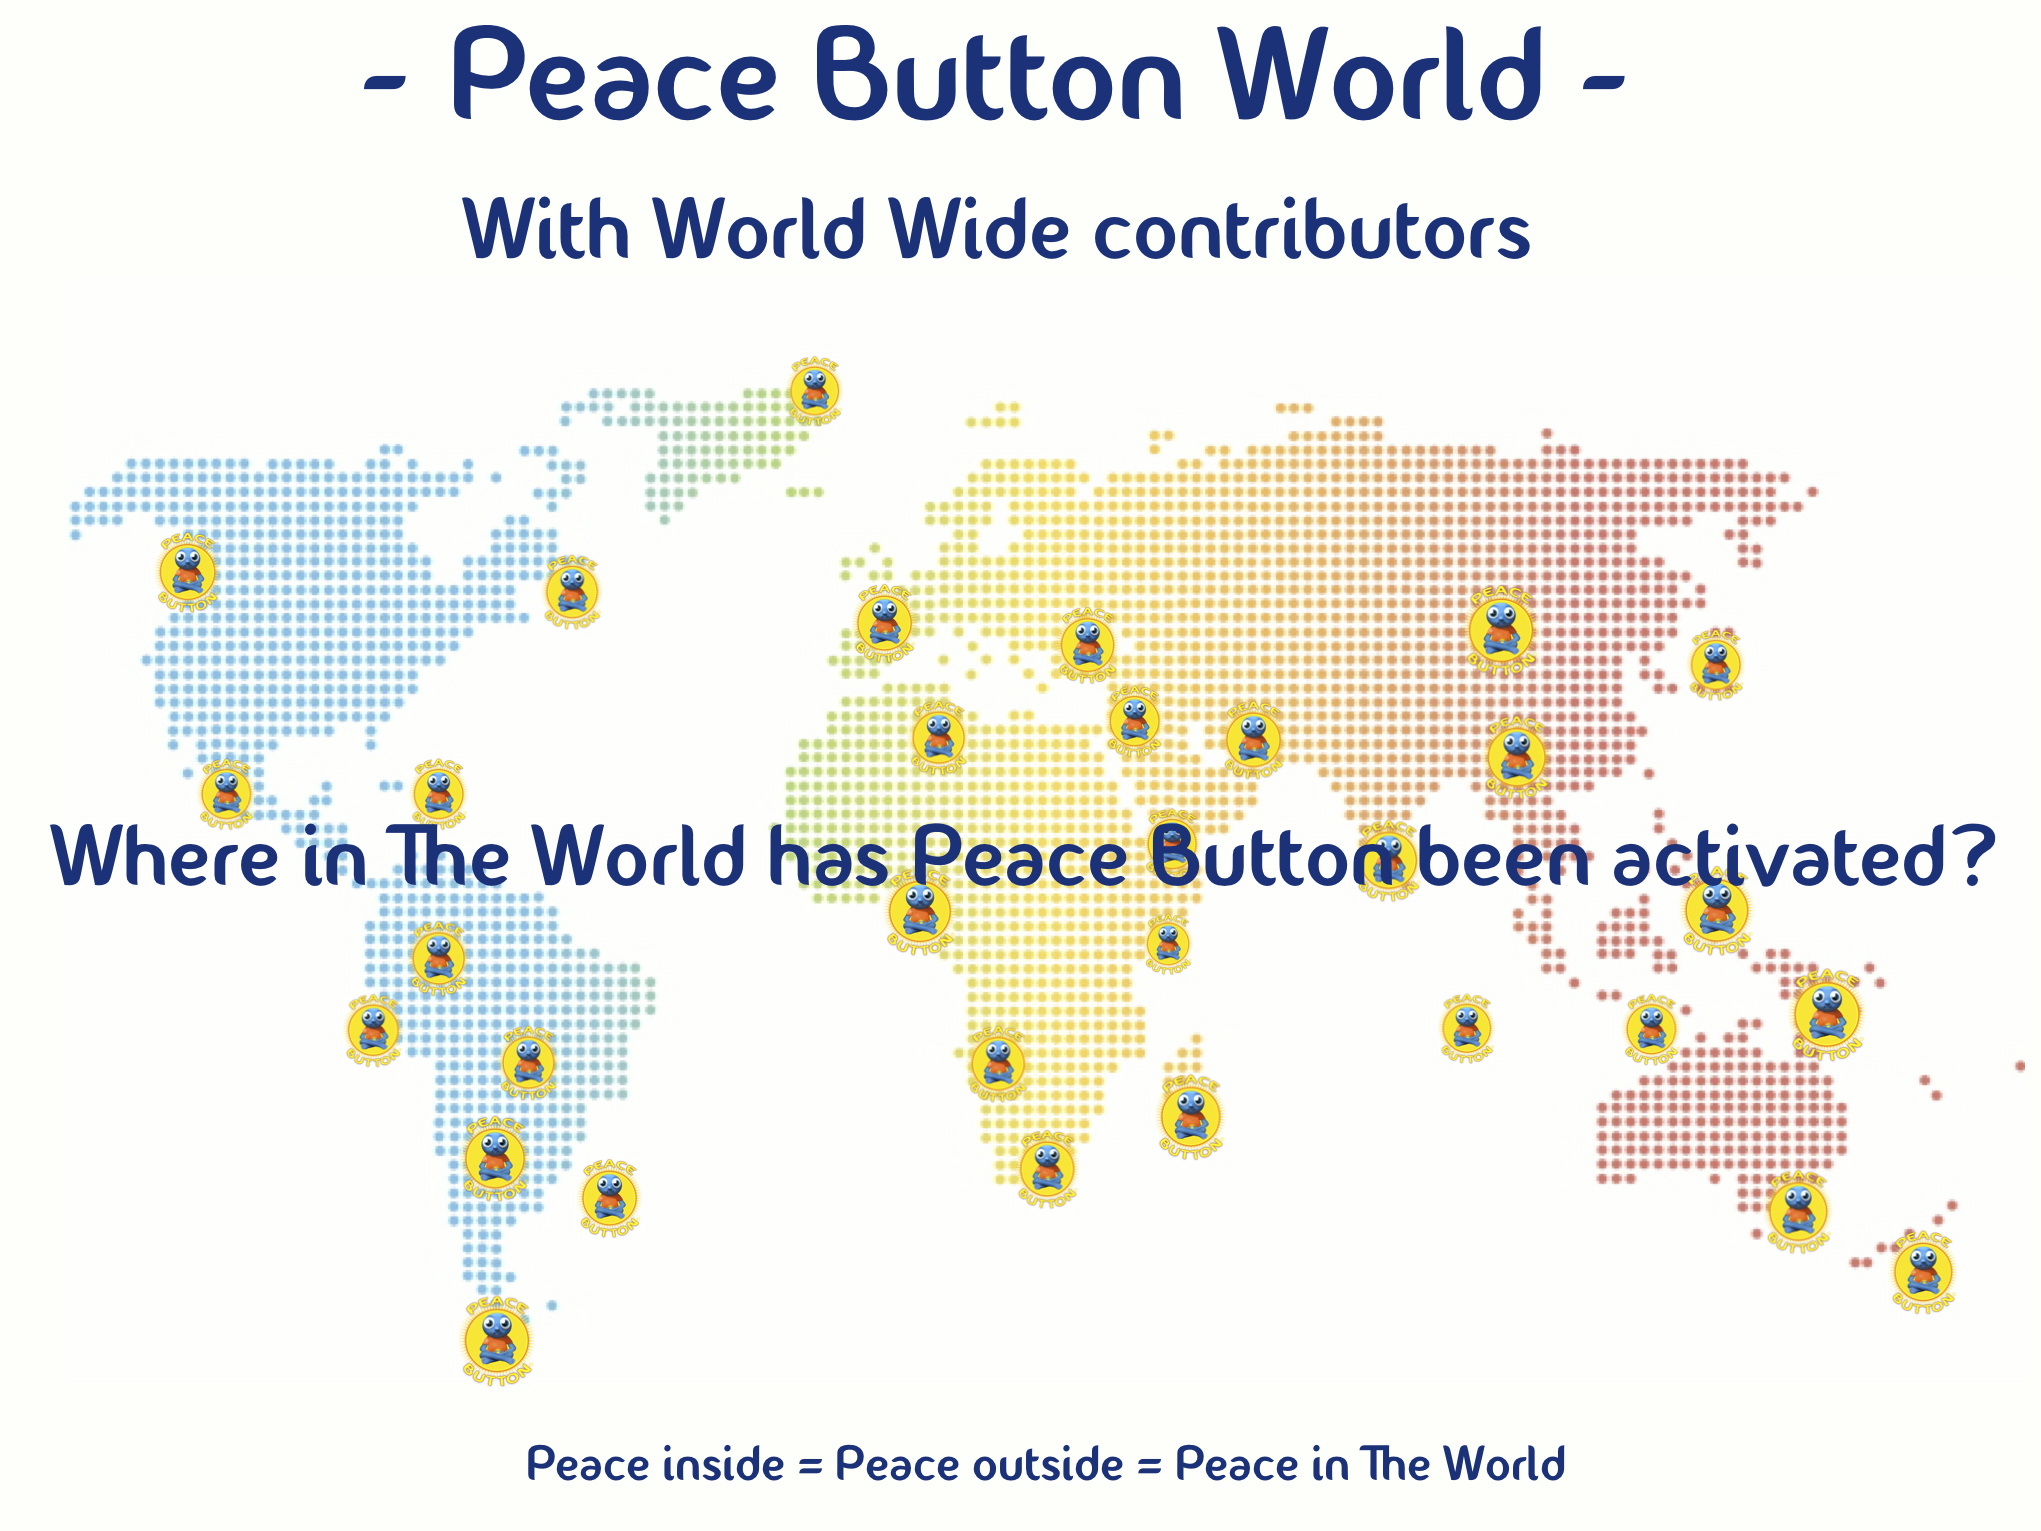 Imagine Peace Button spreading world wide...